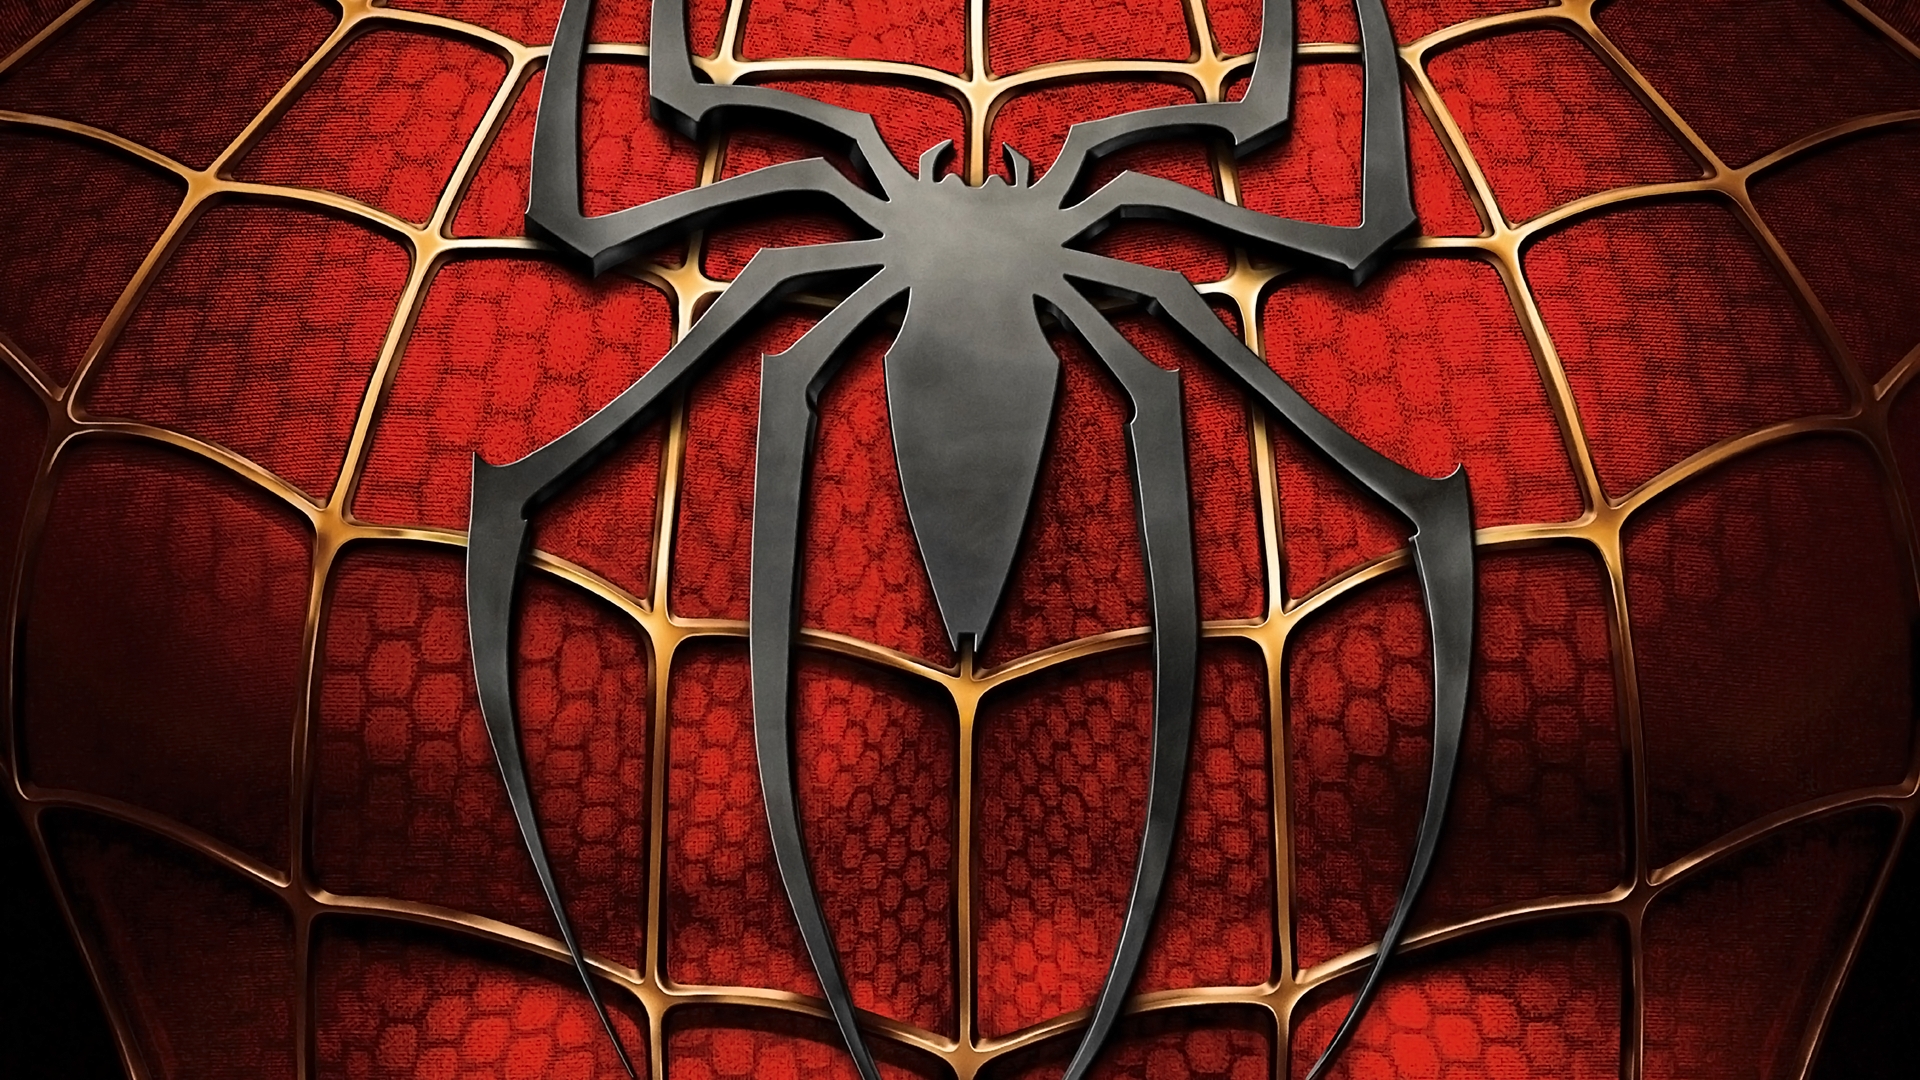 Spiderman movie logo